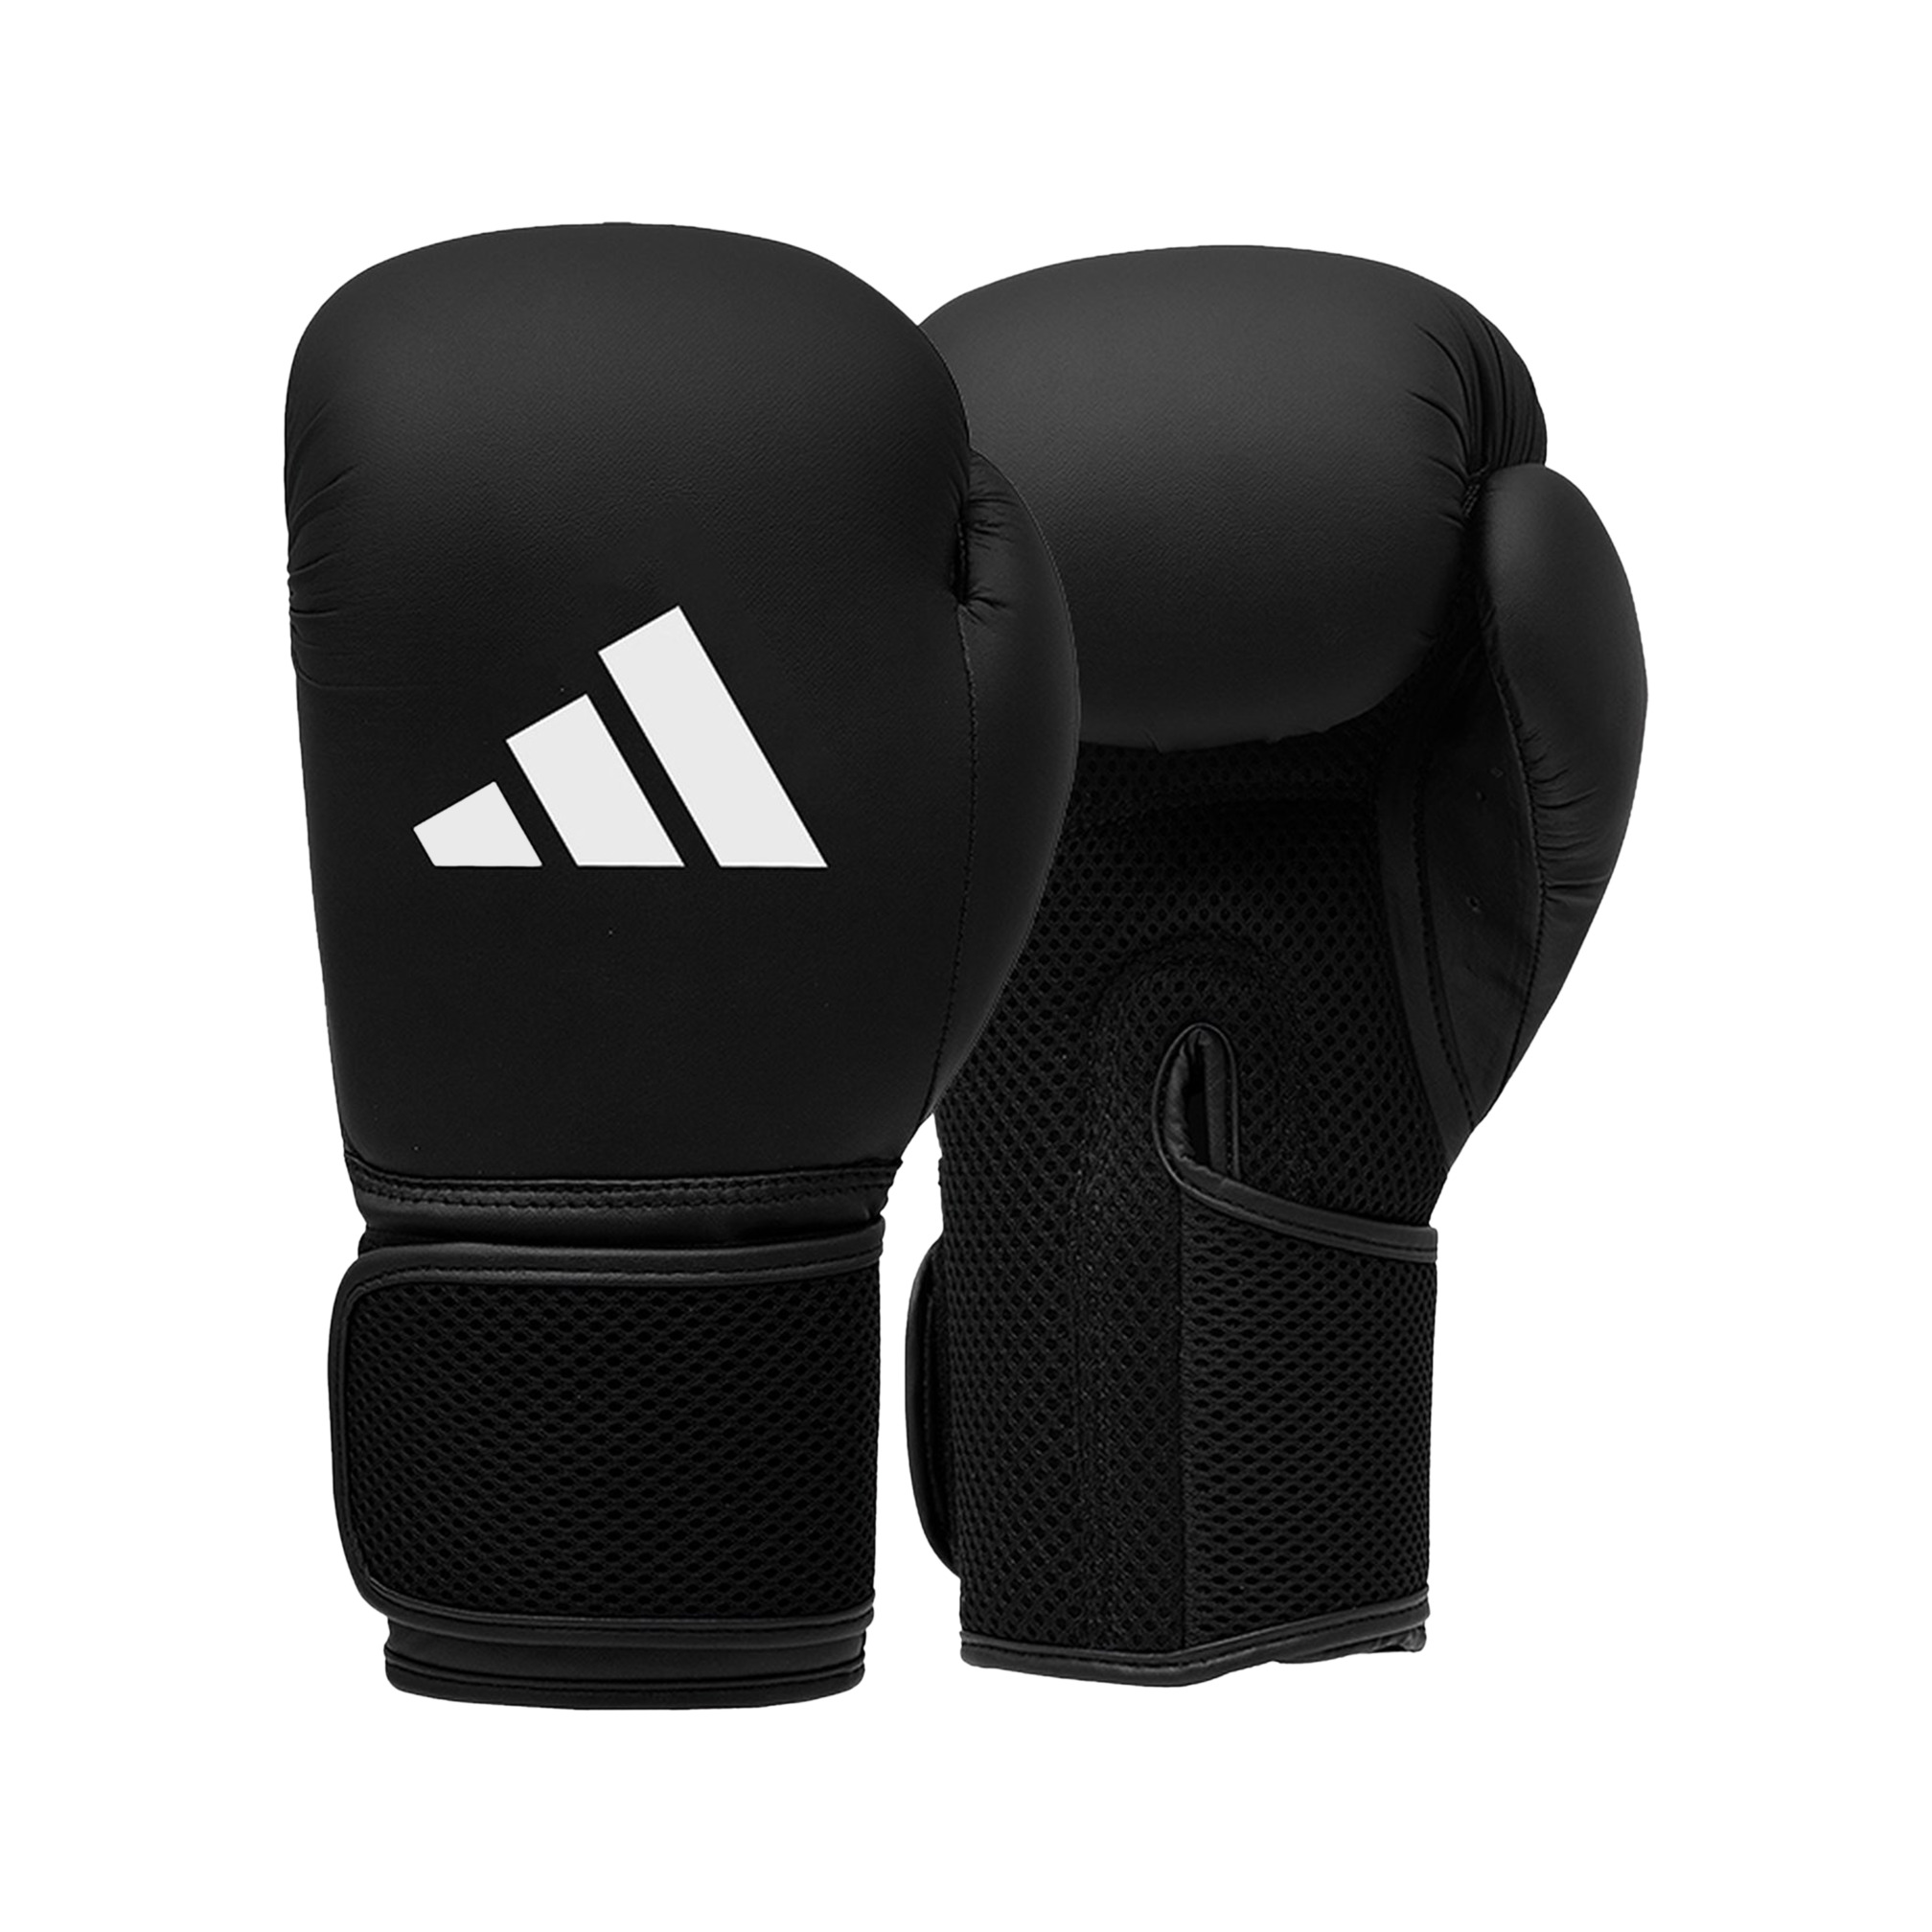 Adidas Hybrid Boxing Gloves for kids 4 oz